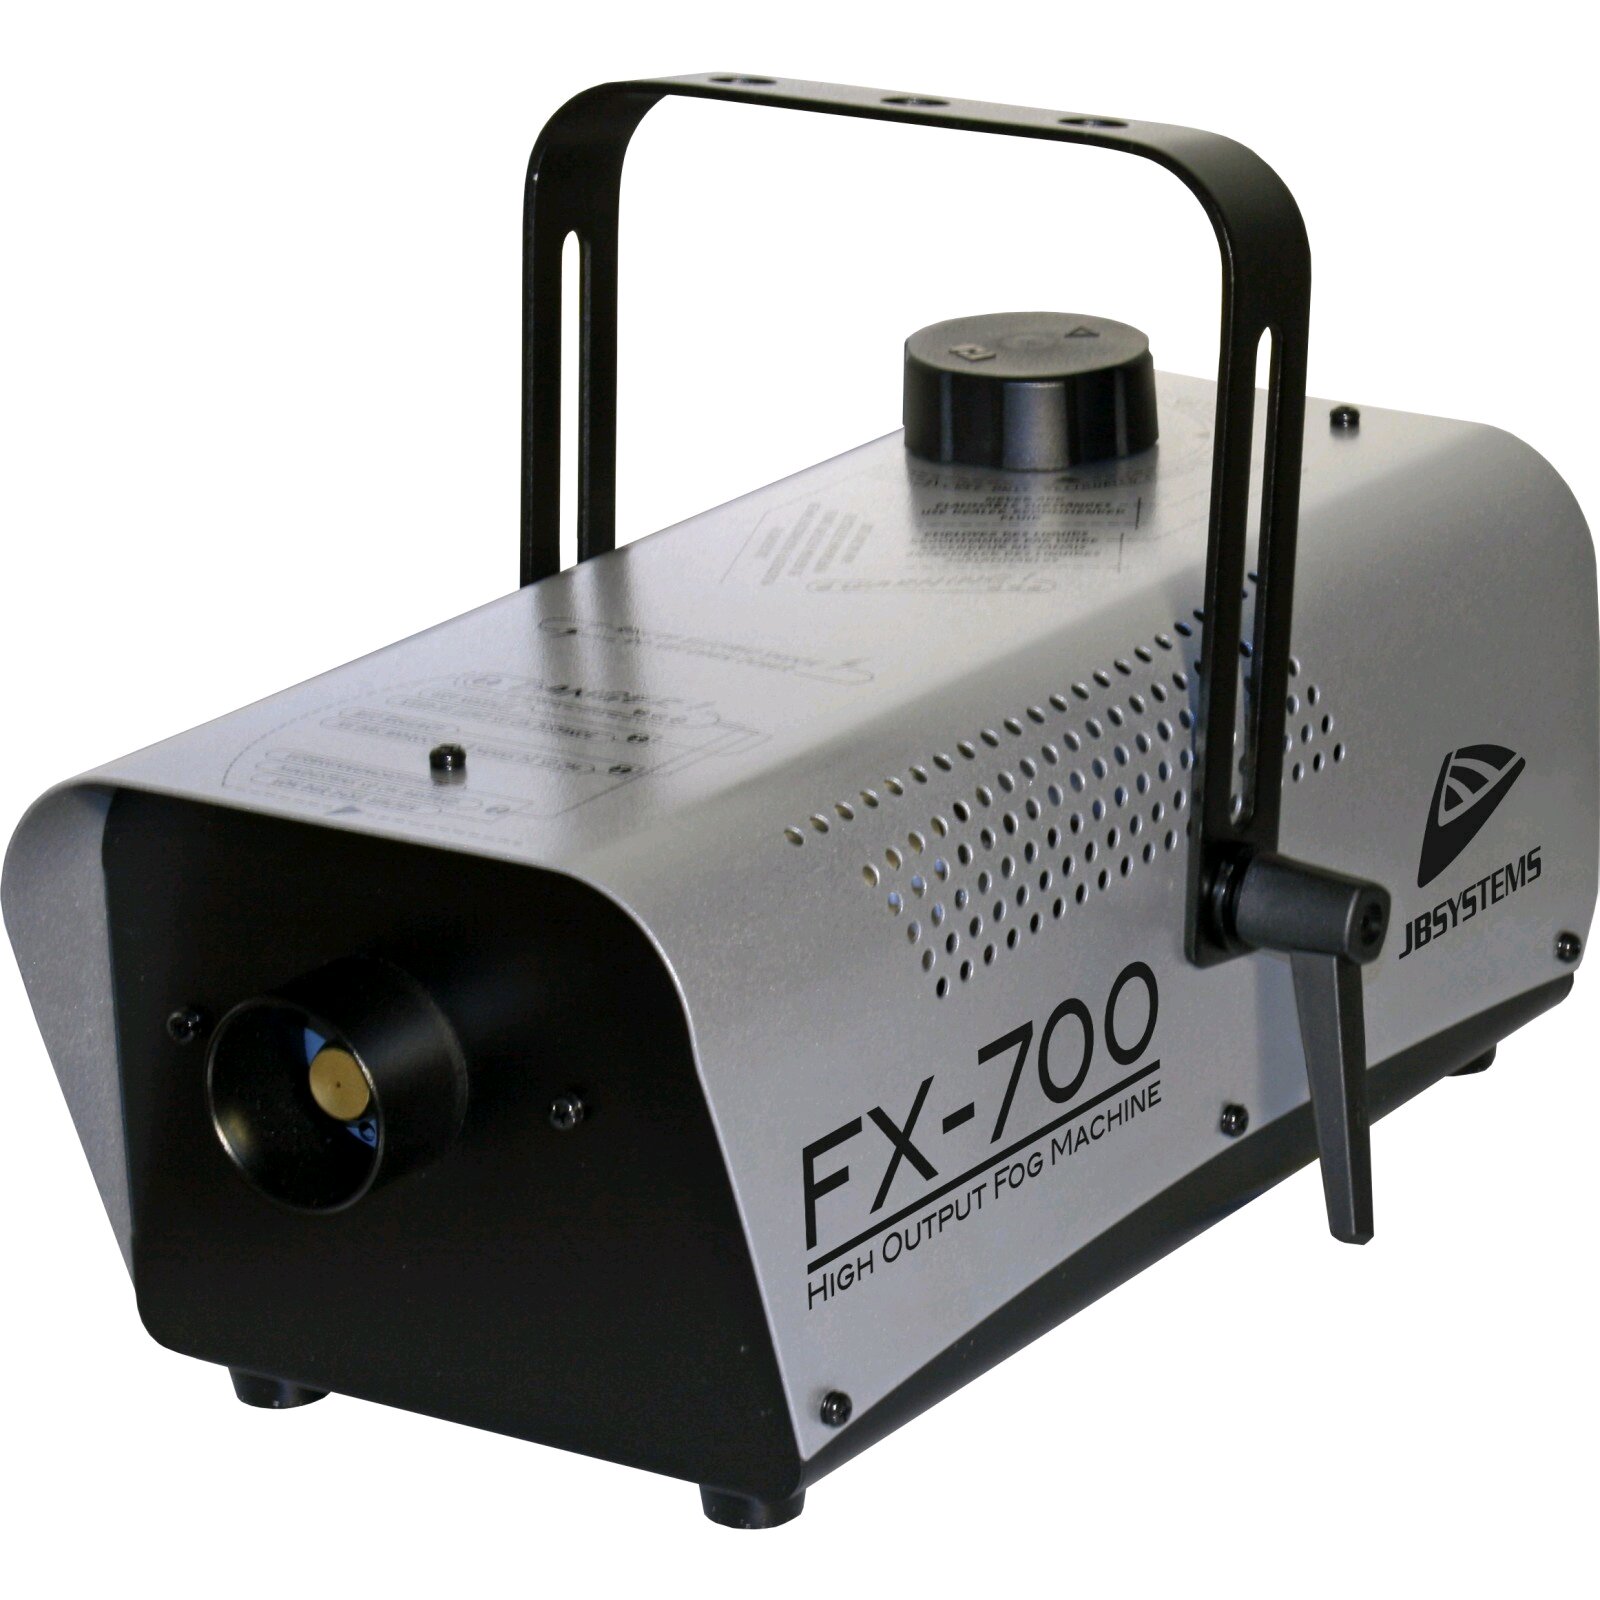 JBSYSTEMS FX-700 - Fog Machine à fumée 700 Watt, incl. on/off remote : photo 1